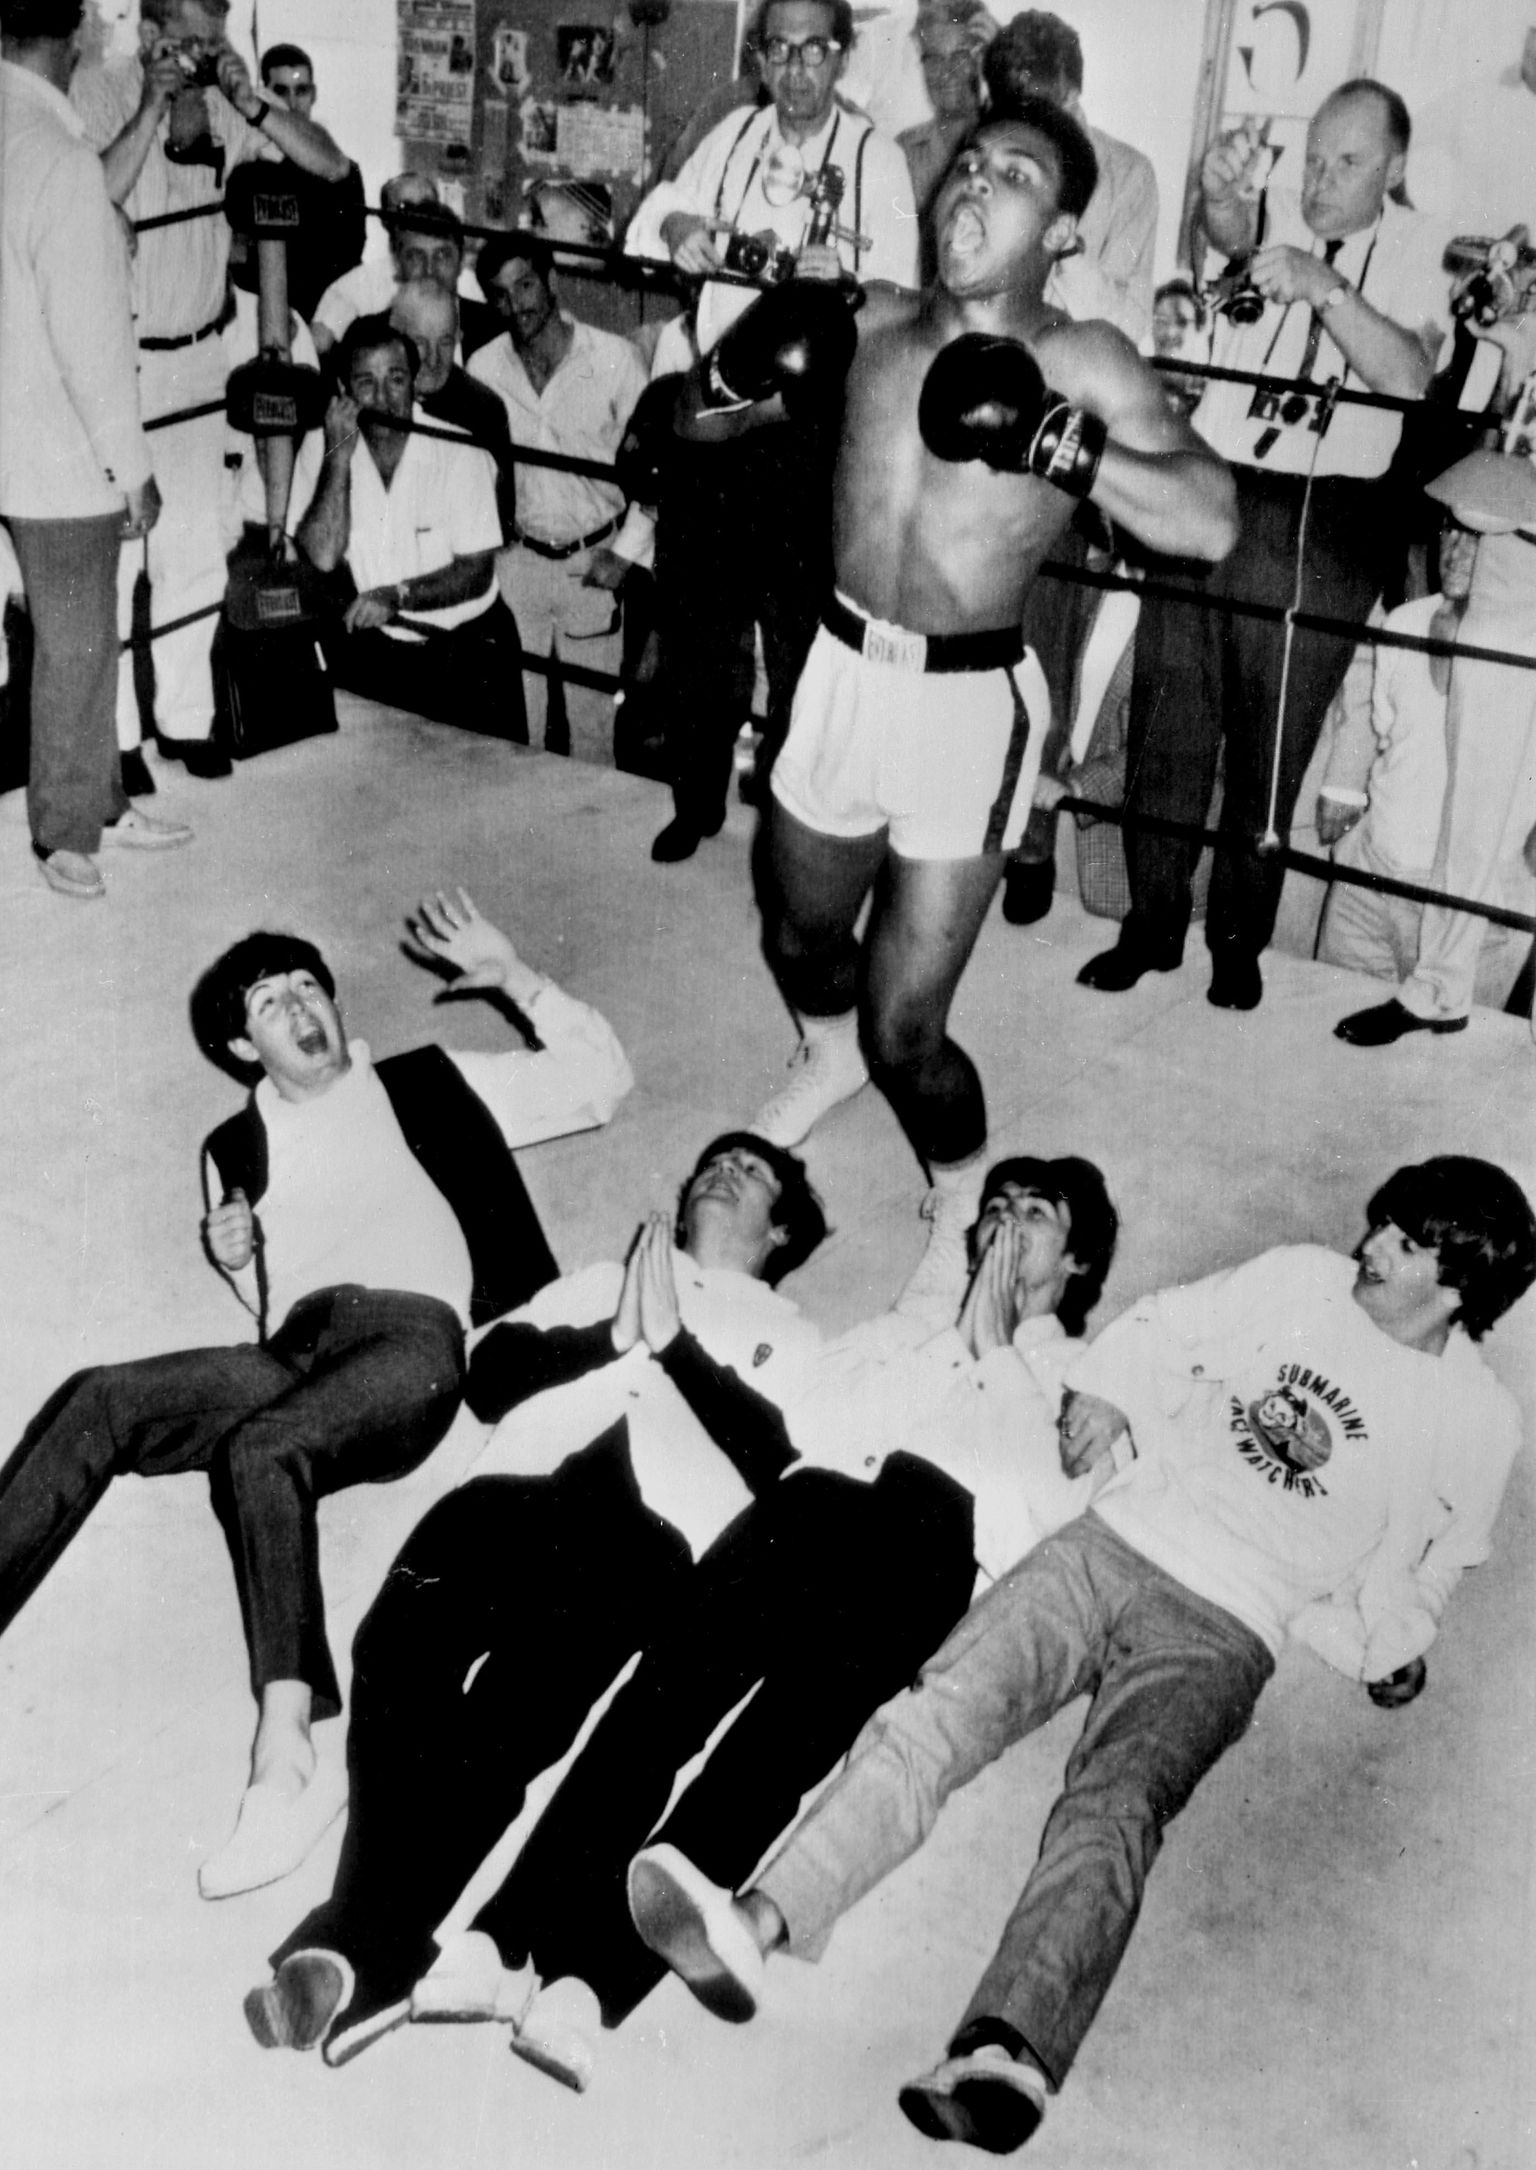 Muhammad Aliga tahtsid kõik ühele pildile. Siin viskab poksisangar nalja koos The Beatles'i bändi liikmetega.